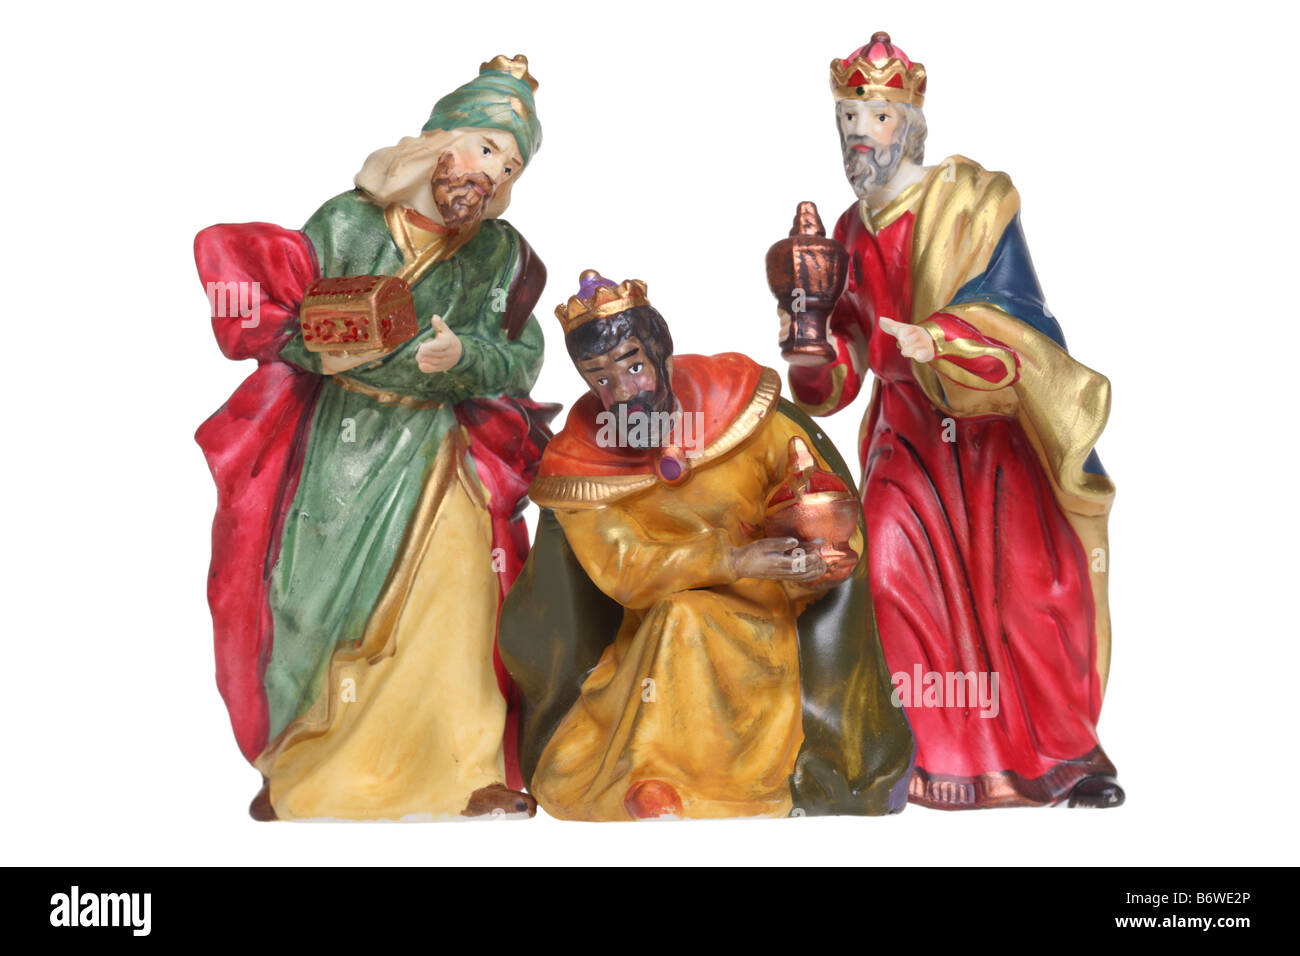 Drei Könige Geburt Szene Figuren Ausschnitt isoliert auf weißem Hintergrund Stockfoto